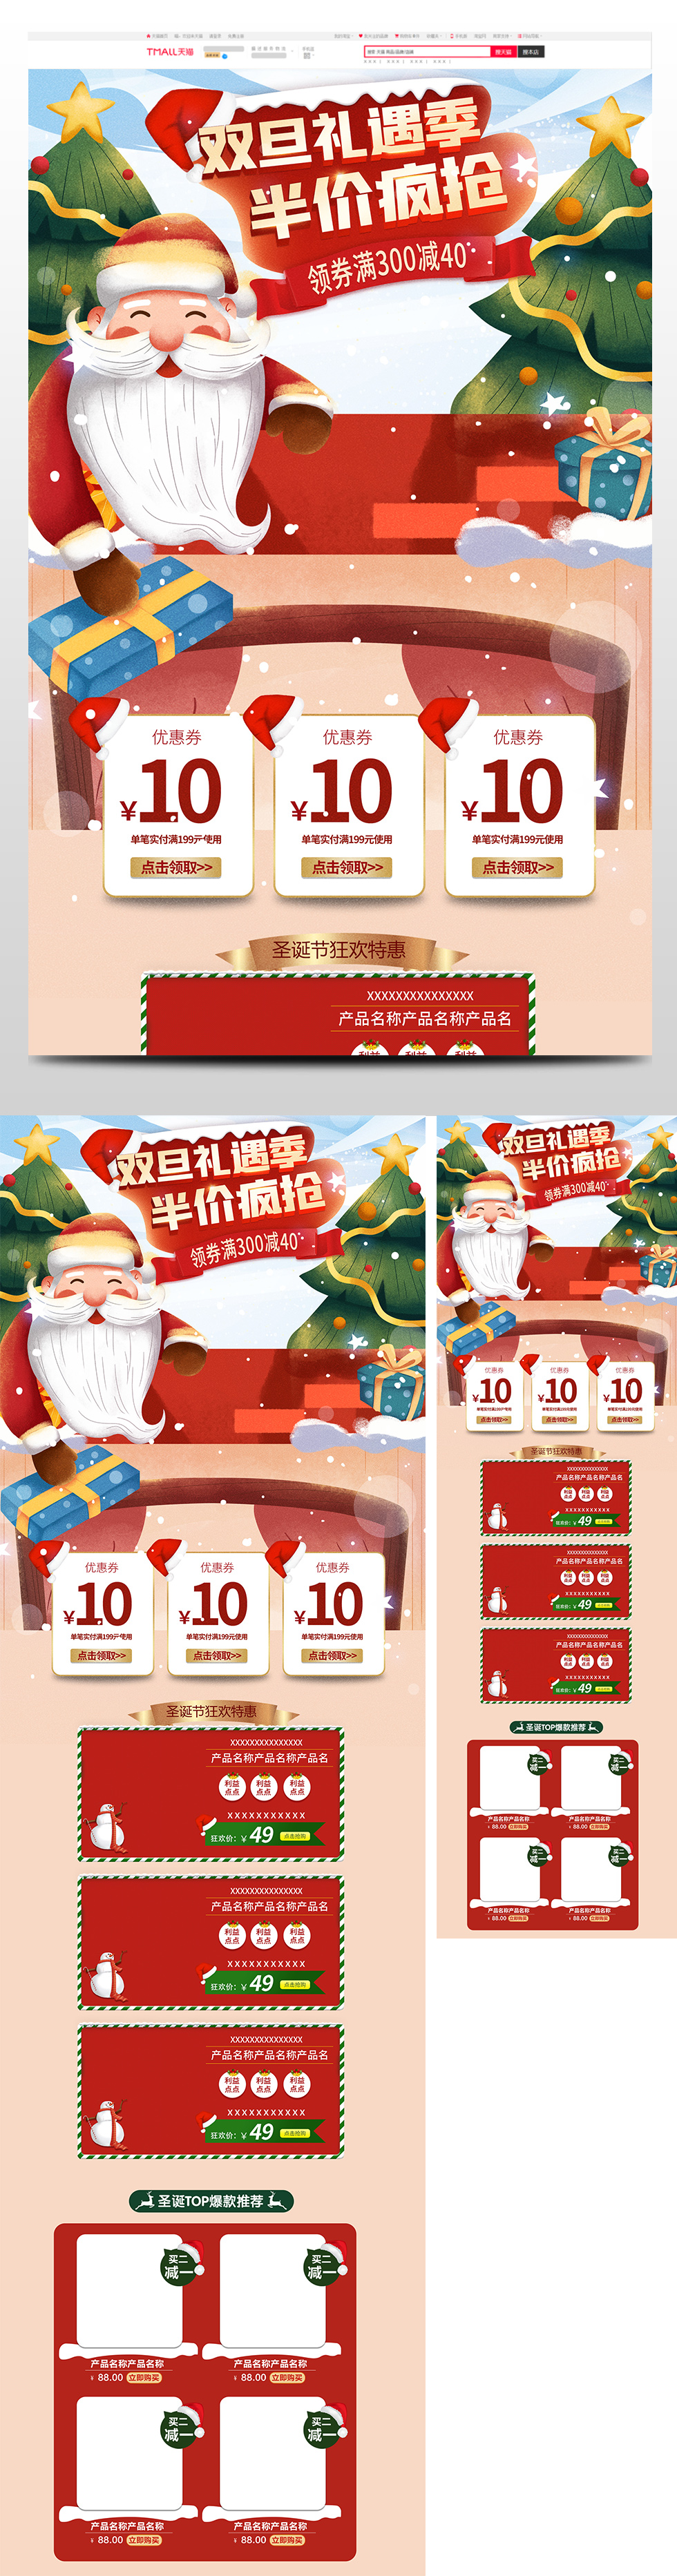 喜庆双旦礼遇季圣诞节元旦节促销天猫首页电商圣诞节首页 66.JPG